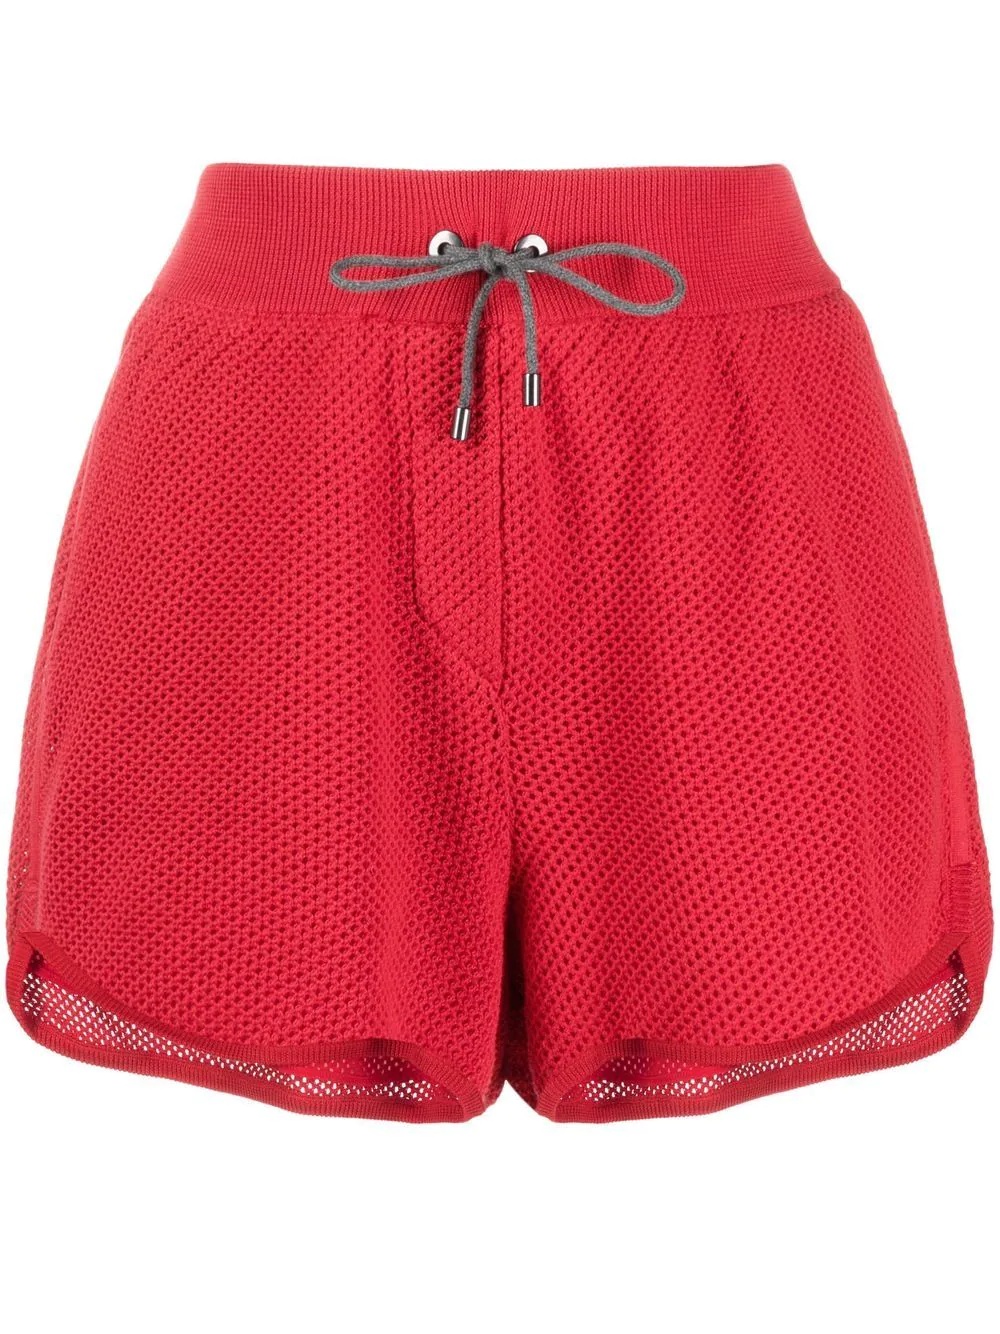 drawstring knit shorts - 1